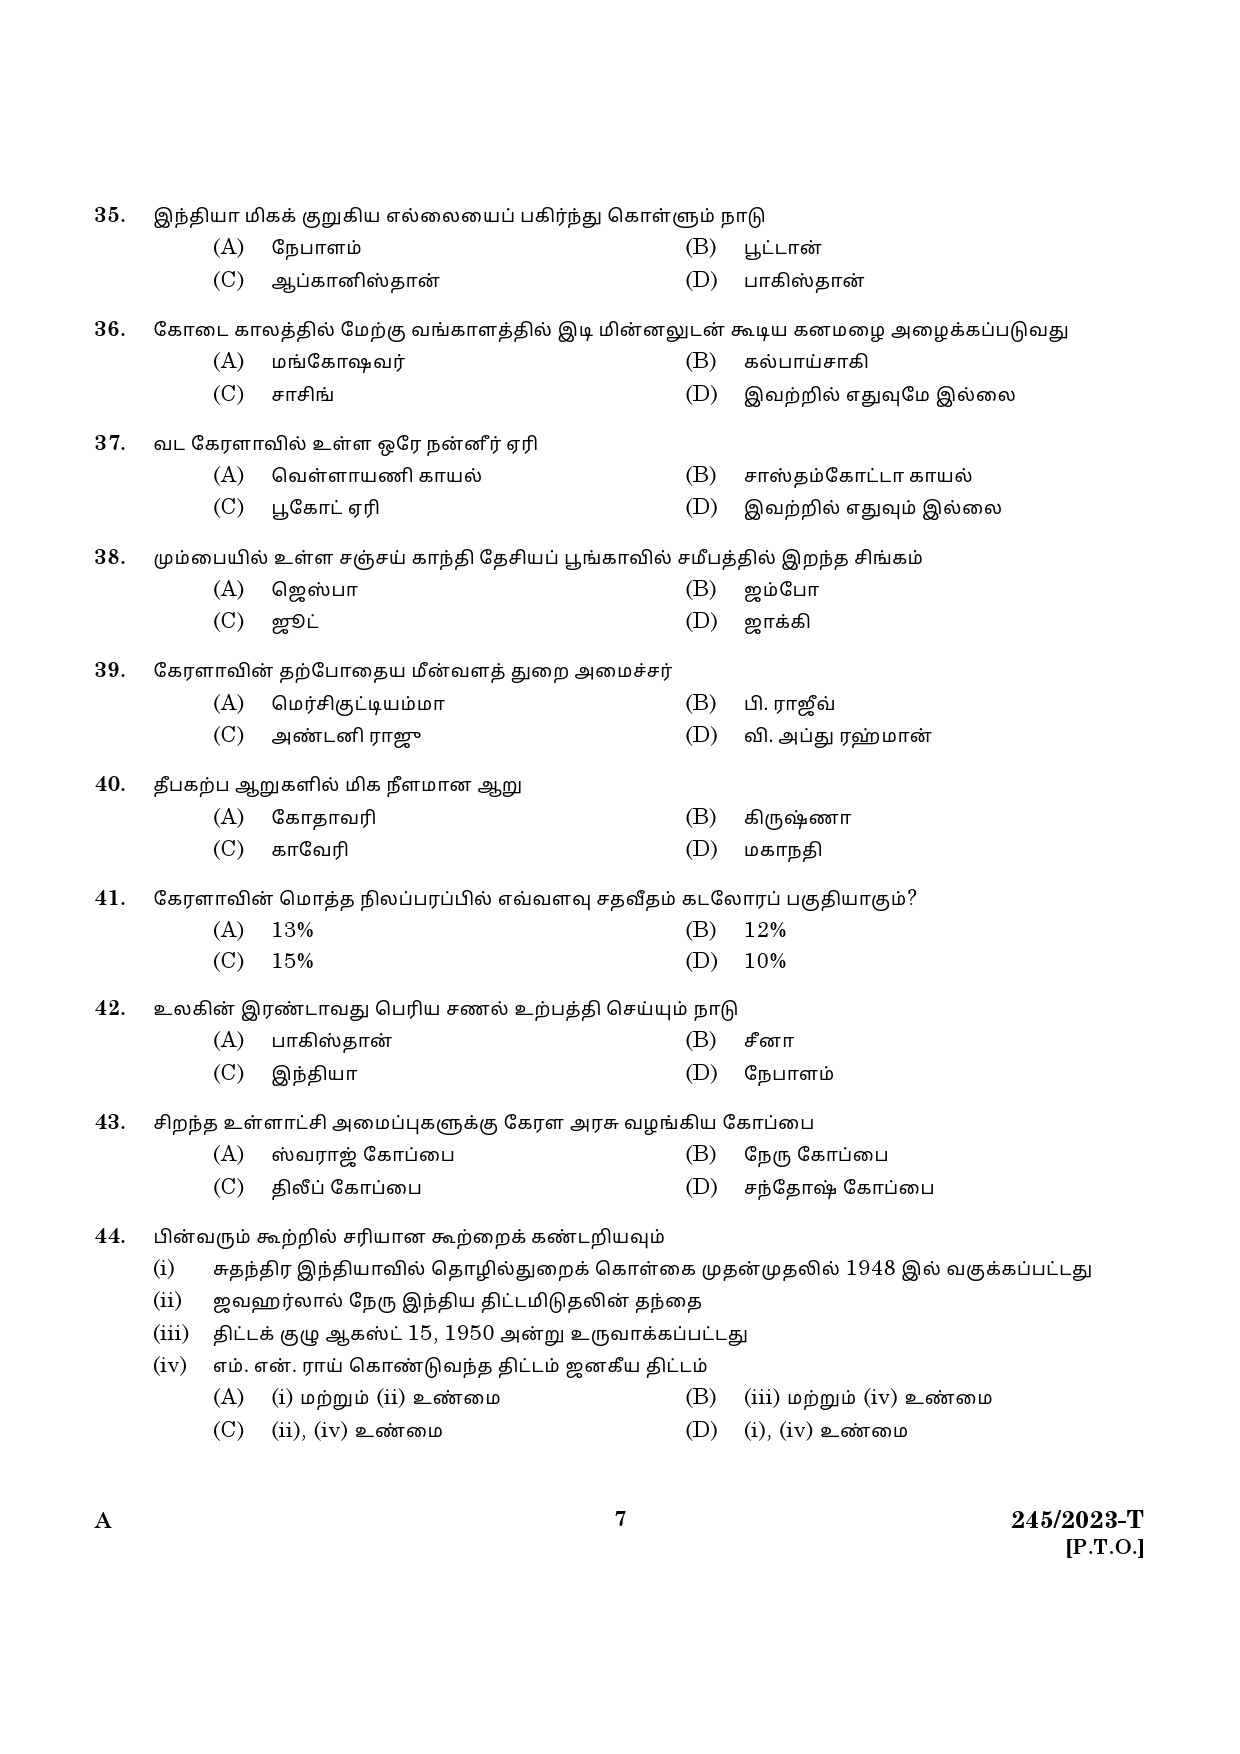 KPSC LGS Tamil Exam 2023 Code 2452023 T 5